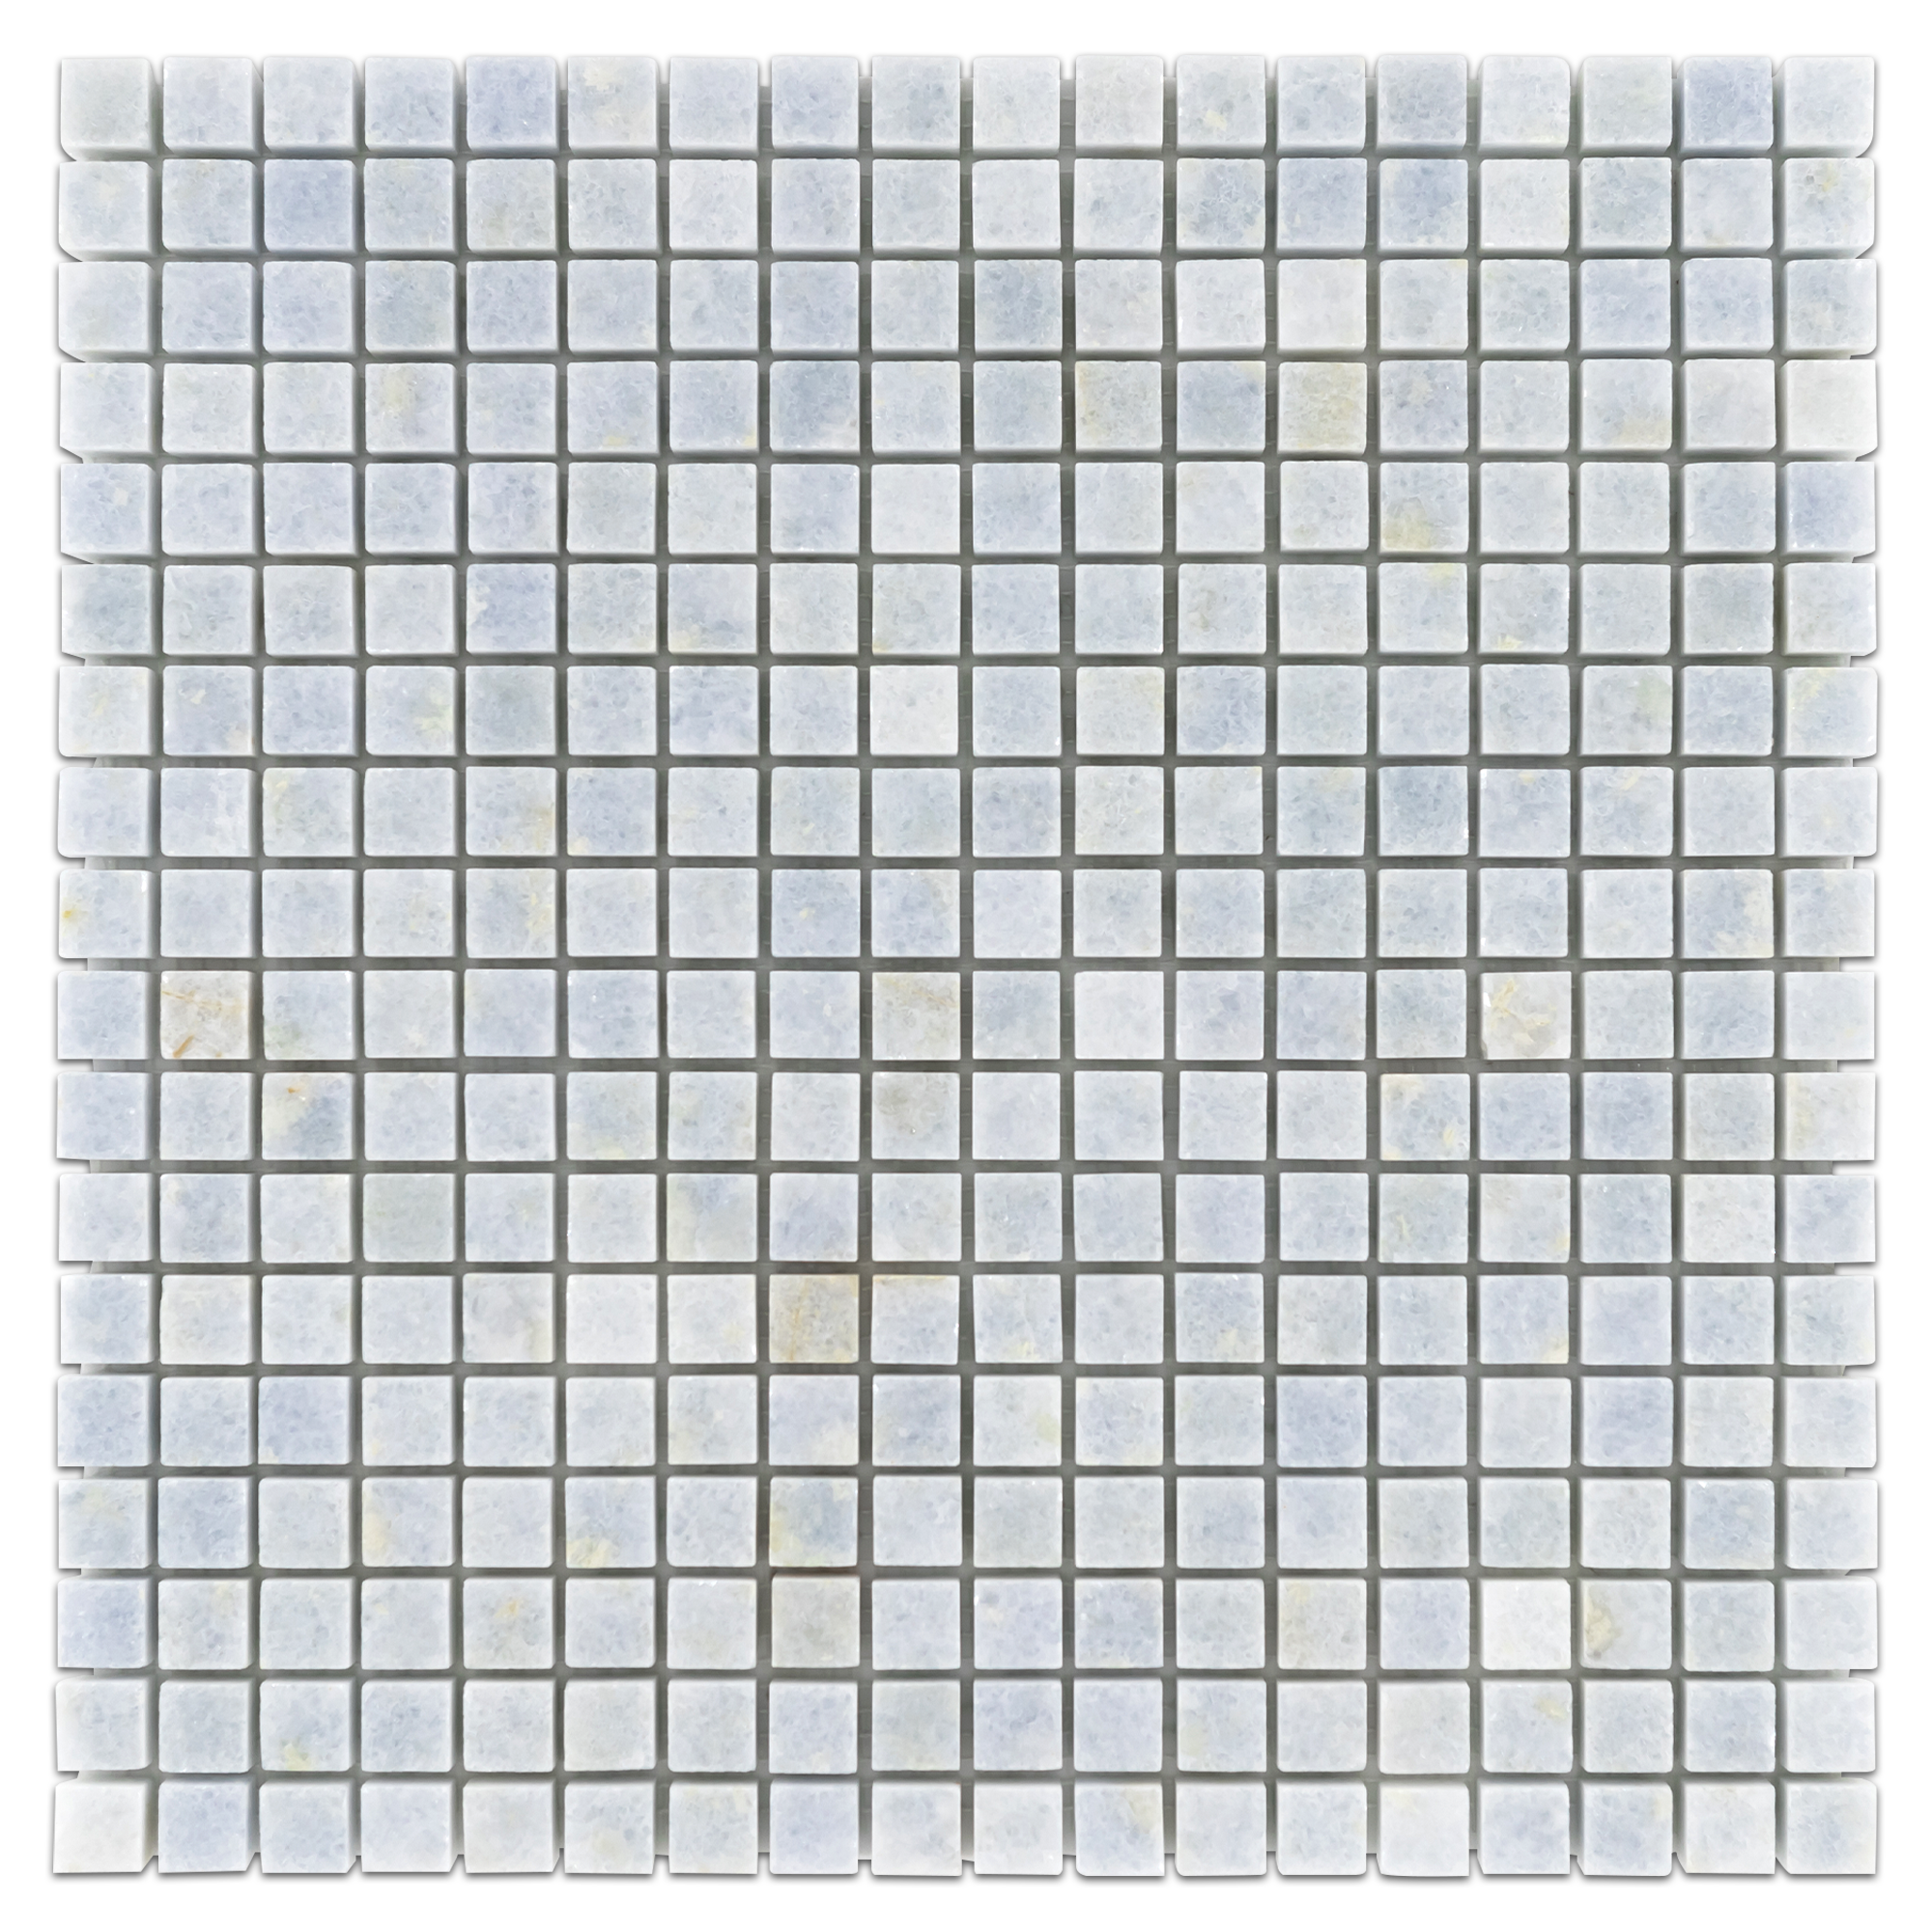 Elon Blue Celeste Marble Mosaic Tile 12x12x0.375 Polished - Surface Group Online Tile Store